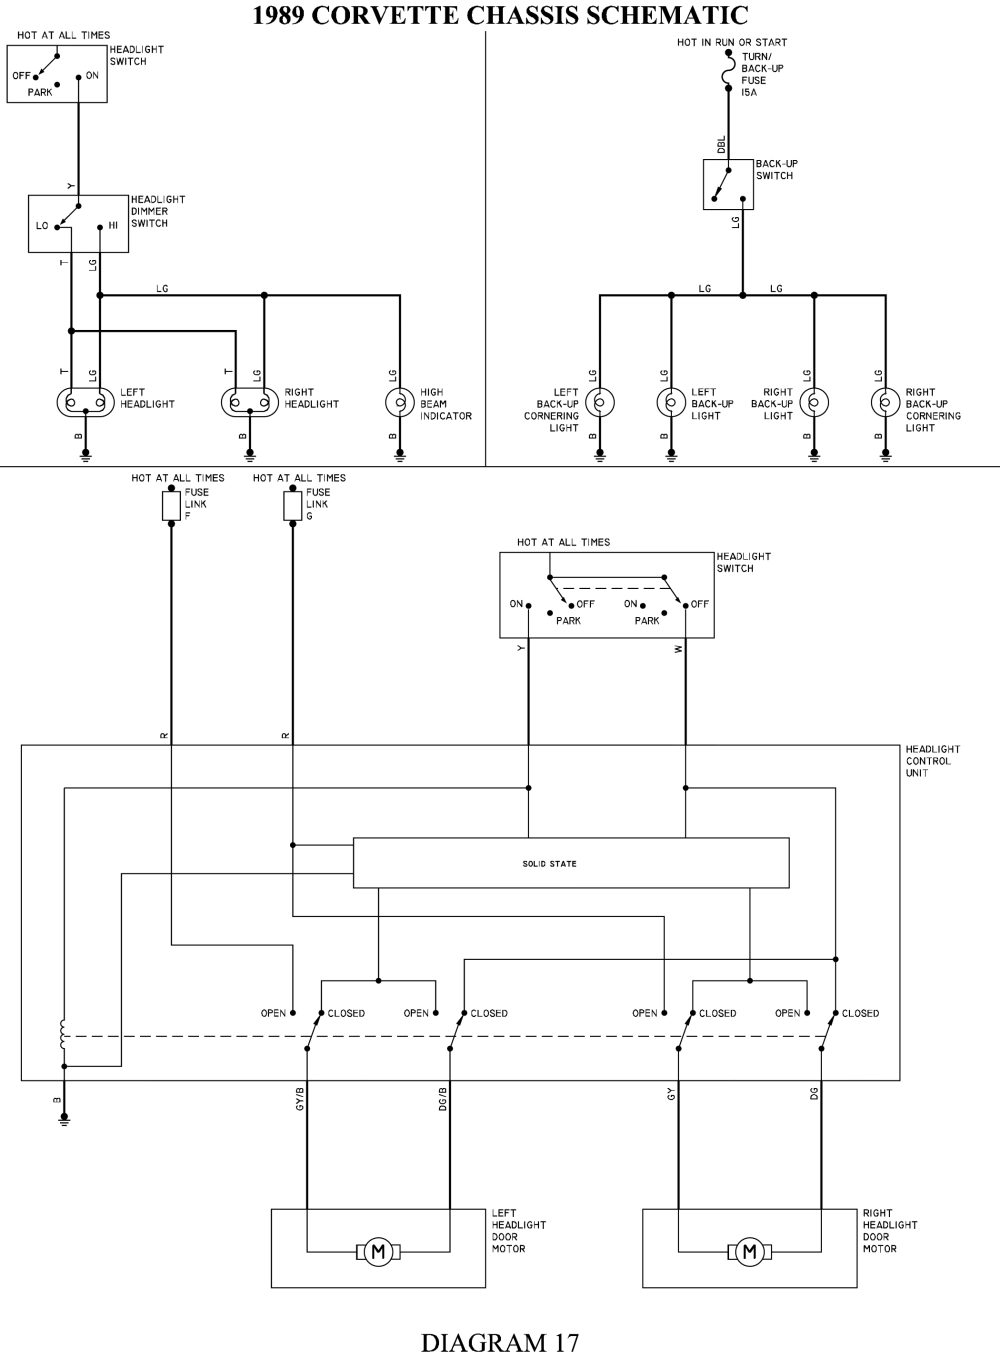 1989 Corvette Wiring Diagram - Wiring Diagram Schema